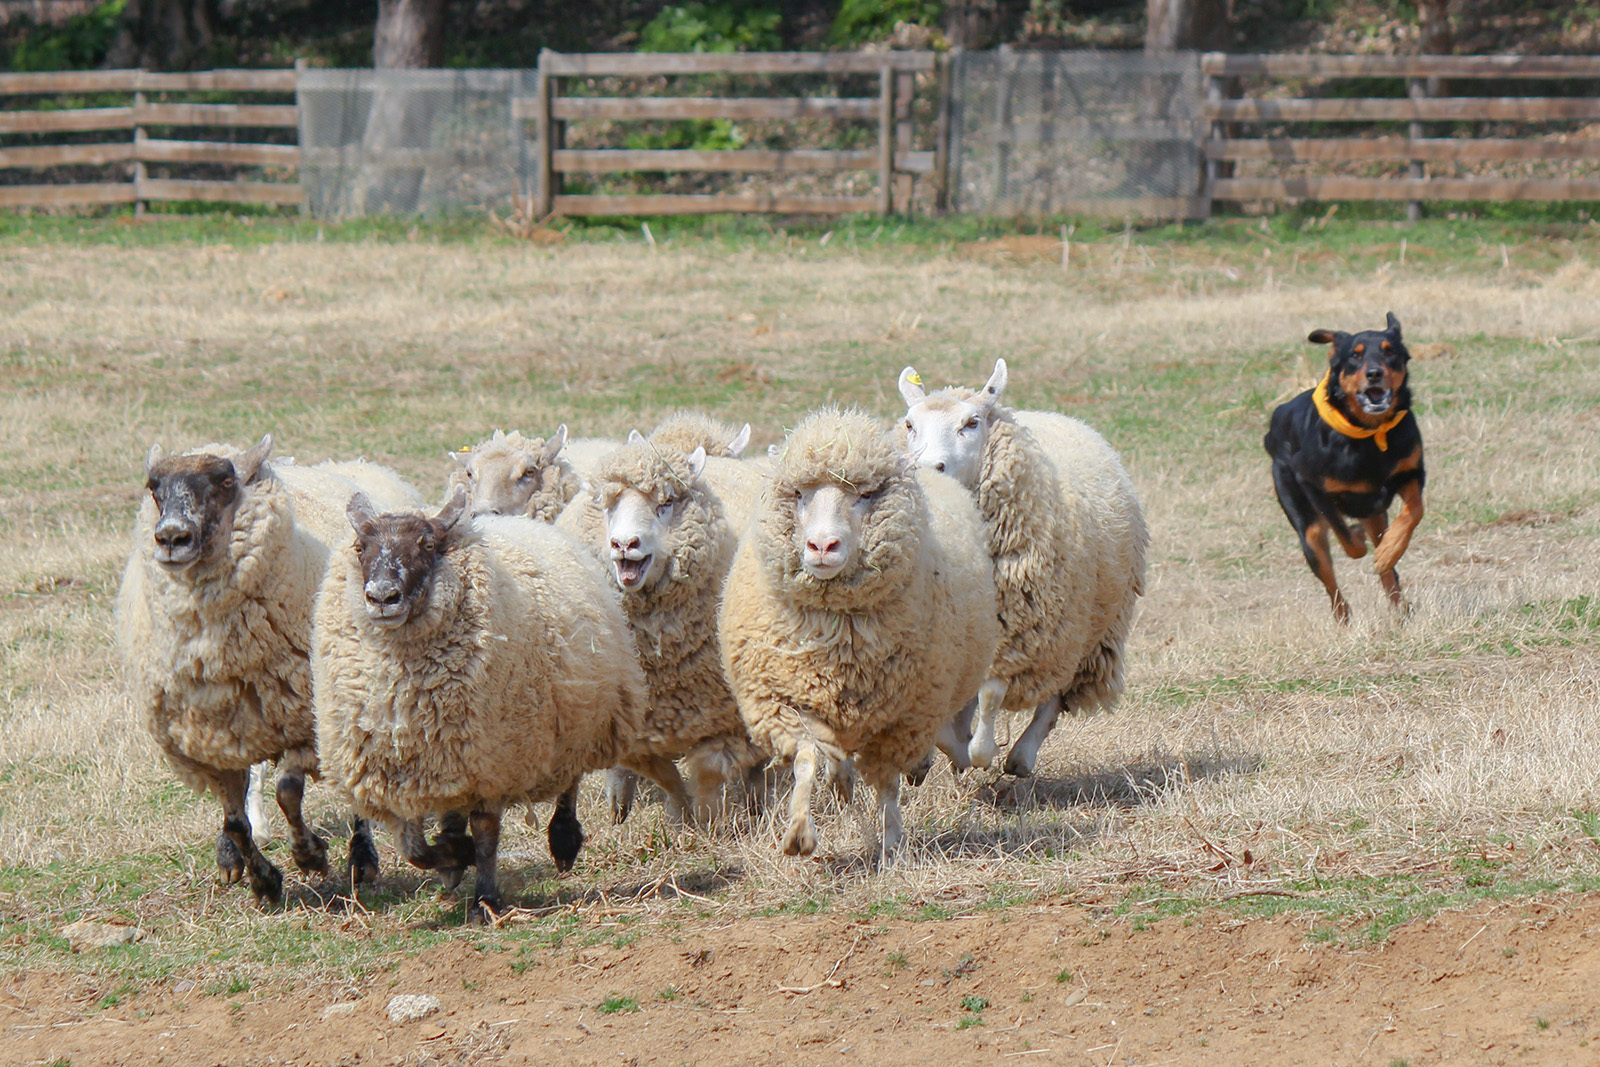 こもれび森のイバライド 開園周年記念イベント 犬と羊が集団演技 シープドッグショー が4月日スタート こもれび森のイバライドのプレスリリース